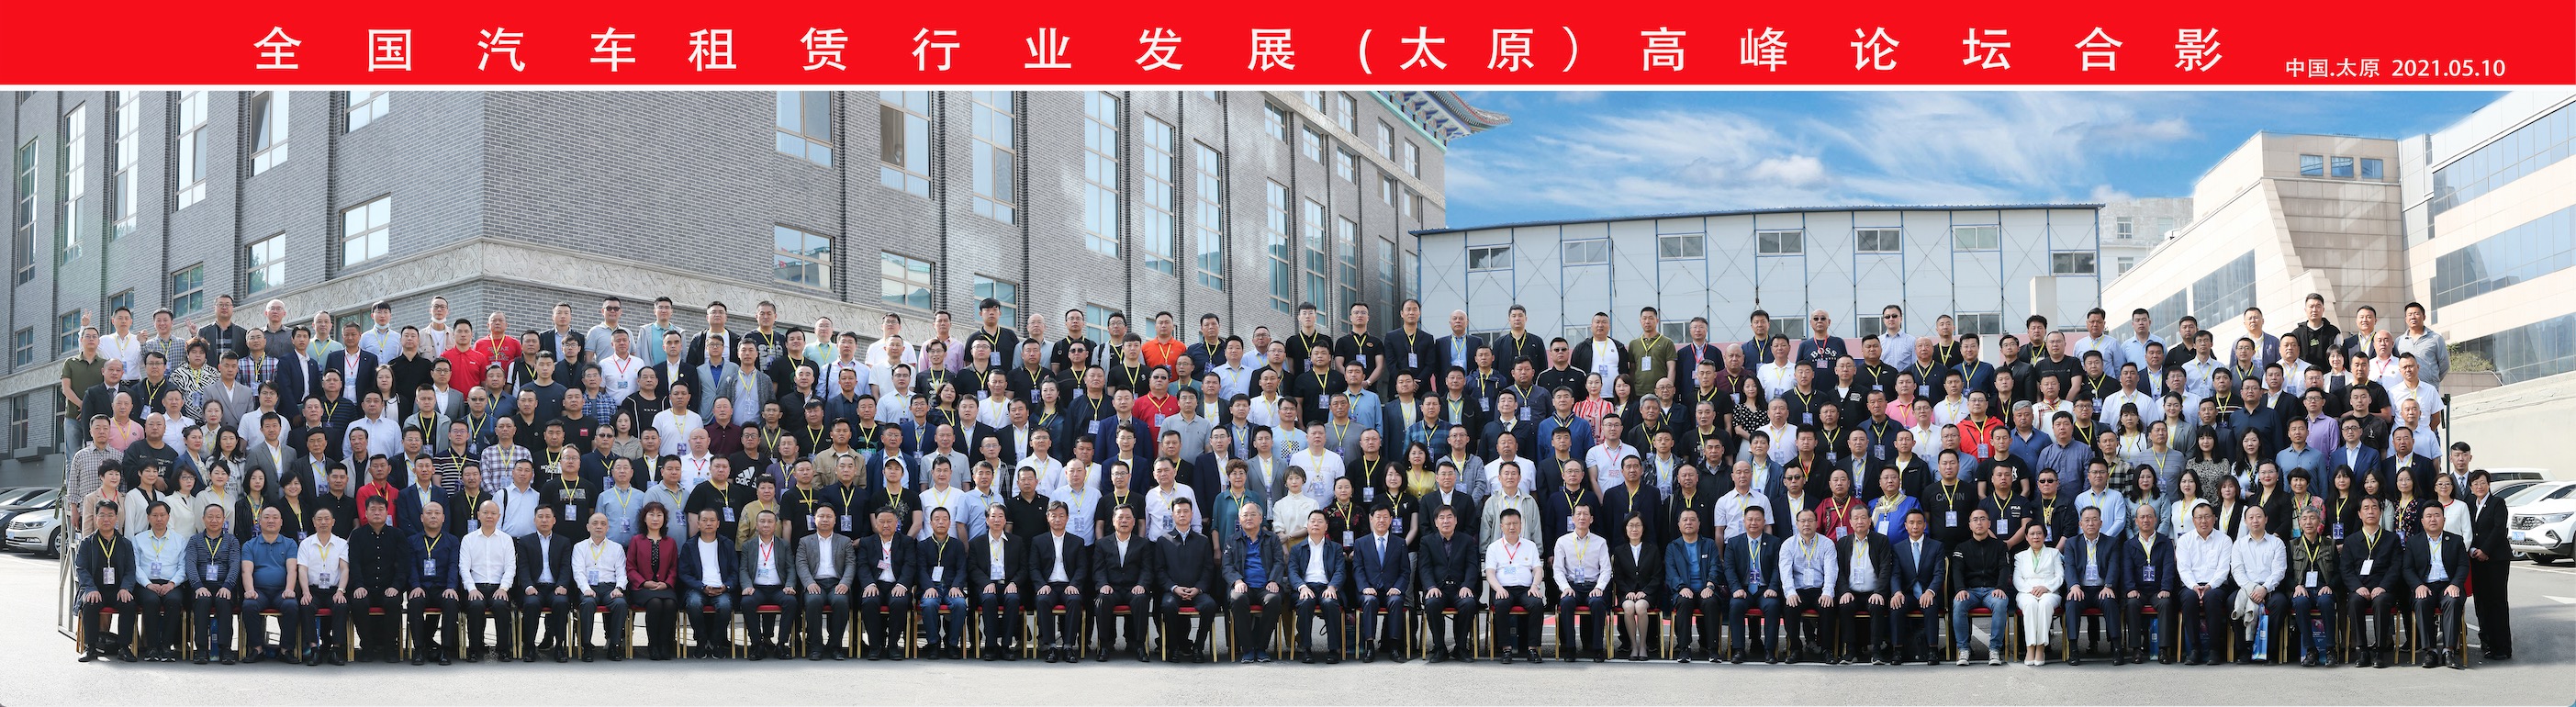 祝贺：全国汽车租赁行业发展（太原）高峰论坛取得圆满成功！